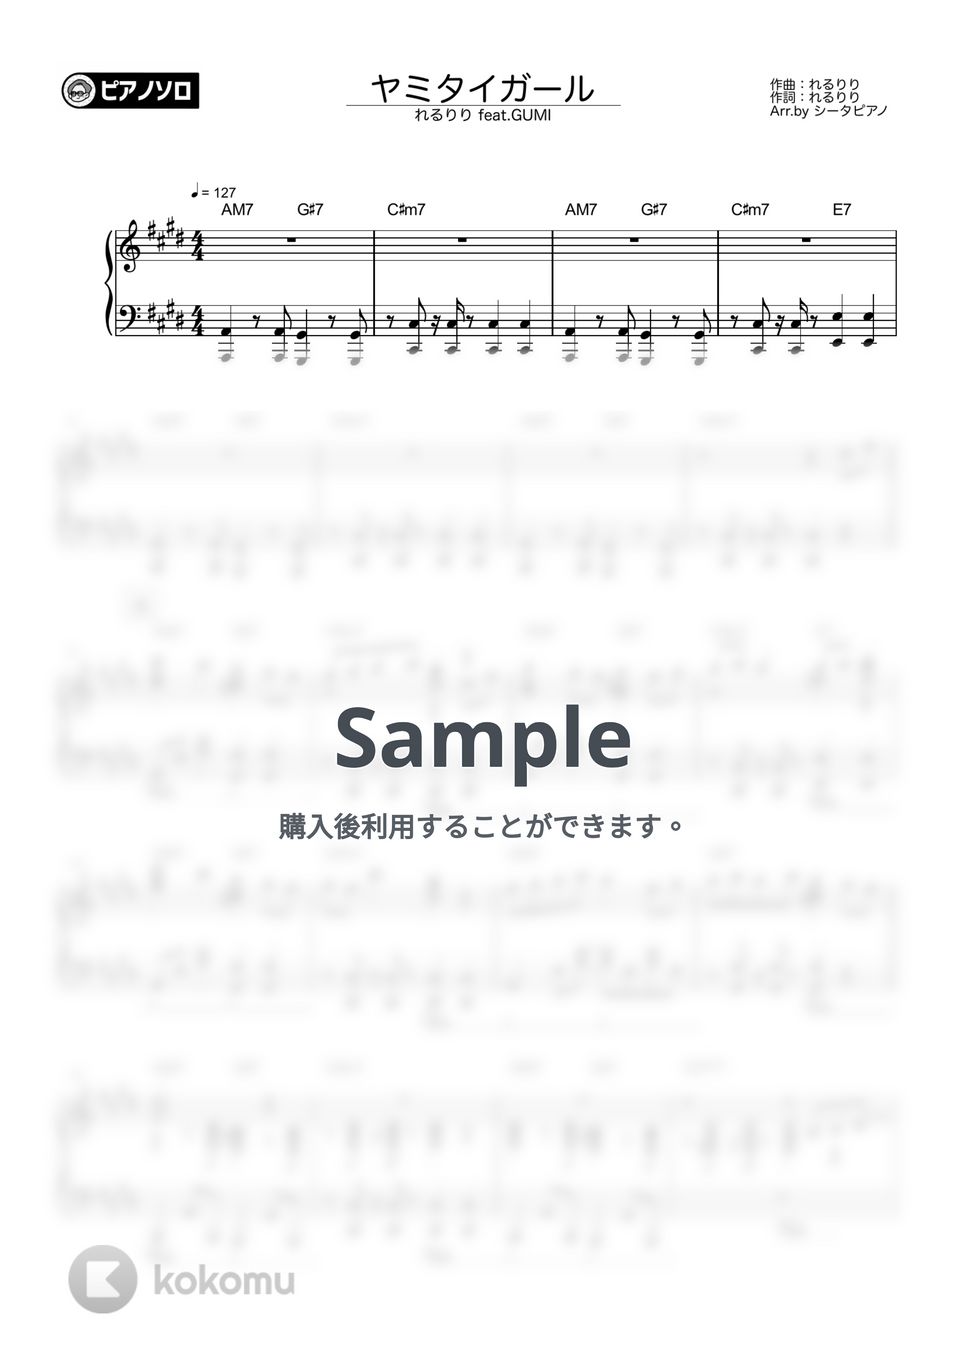 れるりり feat.GUMI - ヤミタイガール by シータピアノ